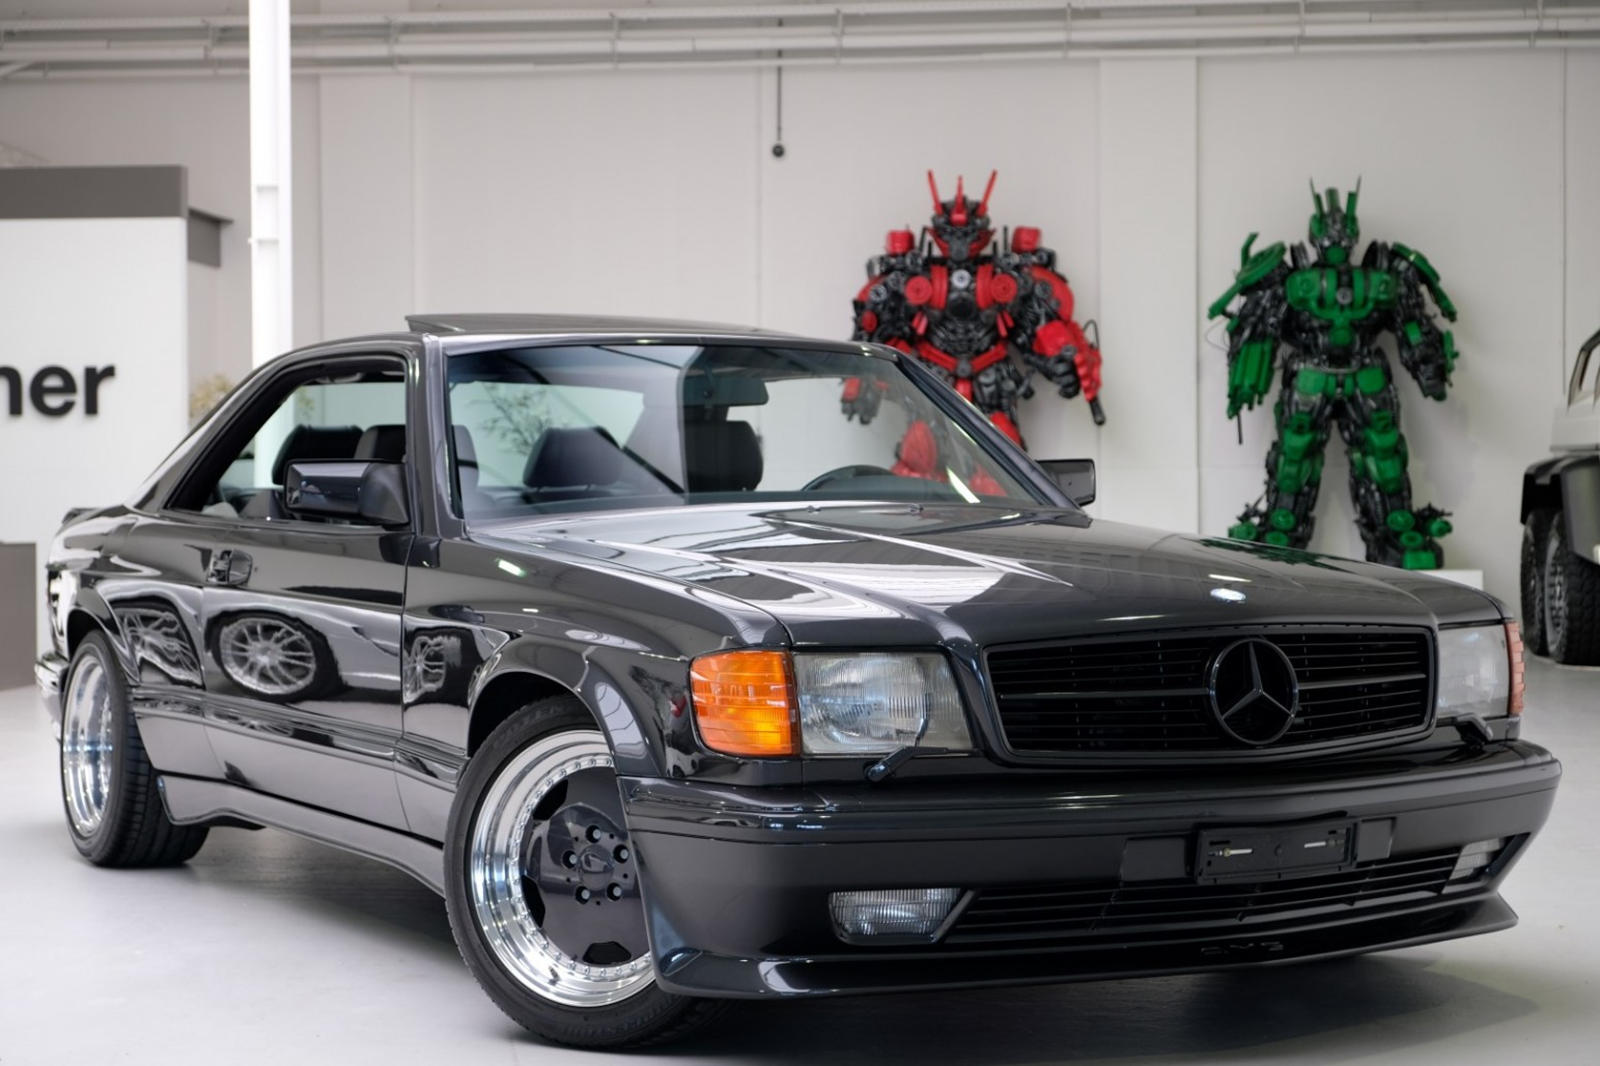 Было время, когда AMG не был частью Mercedes-Benz. В 1999 году немецкий автопроизводитель приобрел контрольный пакет акций бренда и стал его единственным владельцем в 2005 году. До этого у Mercedes были отношения с тюнером вторичного рынка, и одним и